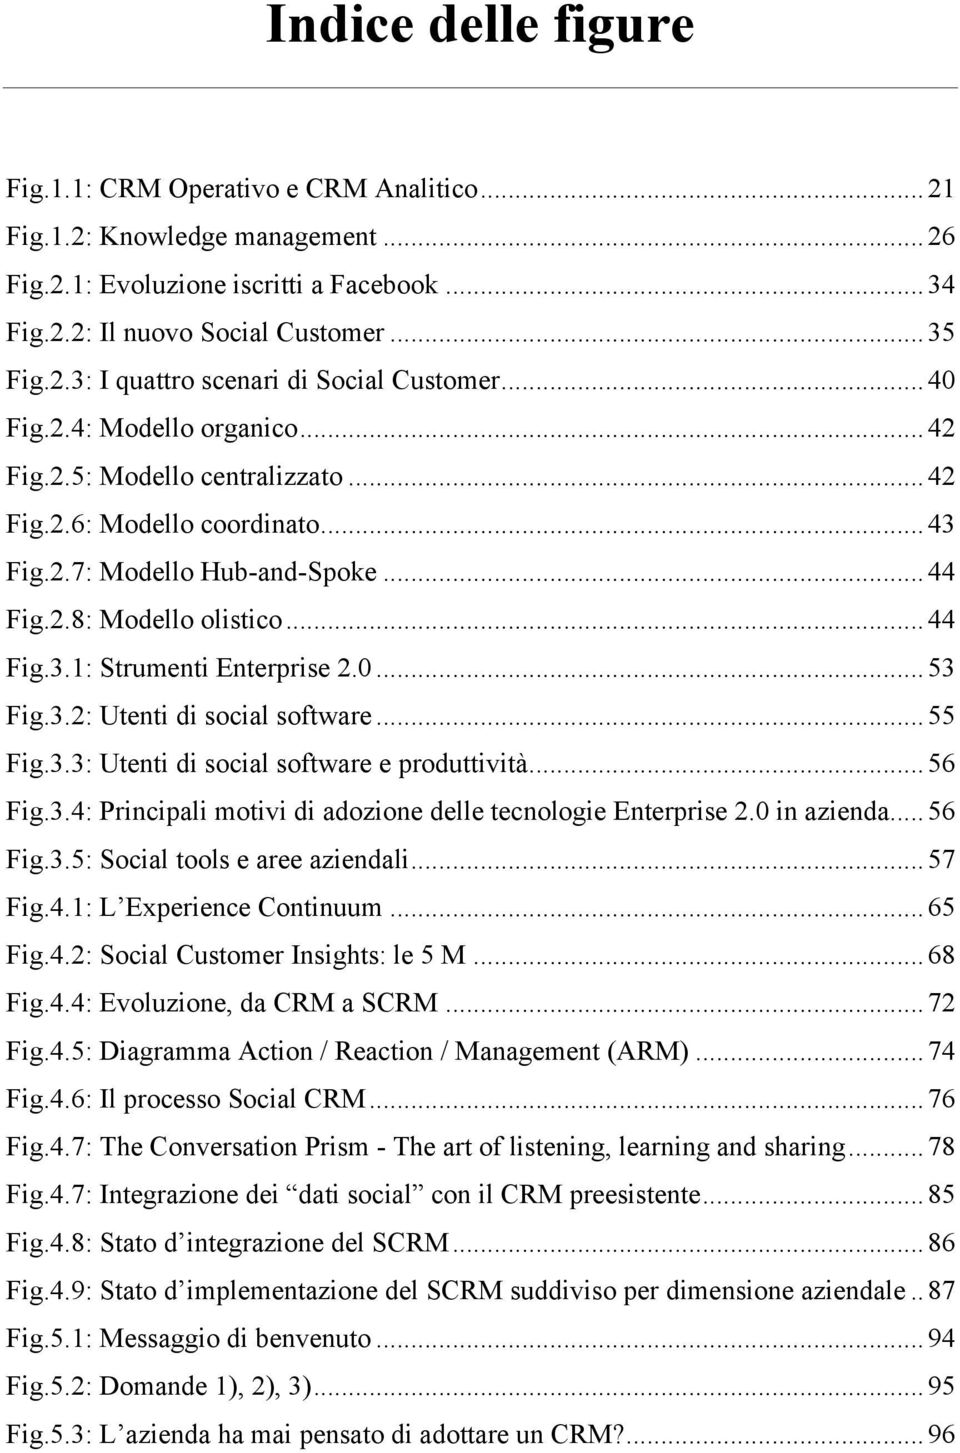 0... 53! Fig.3.2: Utenti di social software... 55! Fig.3.3: Utenti di social software e produttività... 56! Fig.3.4: Principali motivi di adozione delle tecnologie Enterprise 2.0 in azienda... 56! Fig.3.5: Social tools e aree aziendali.